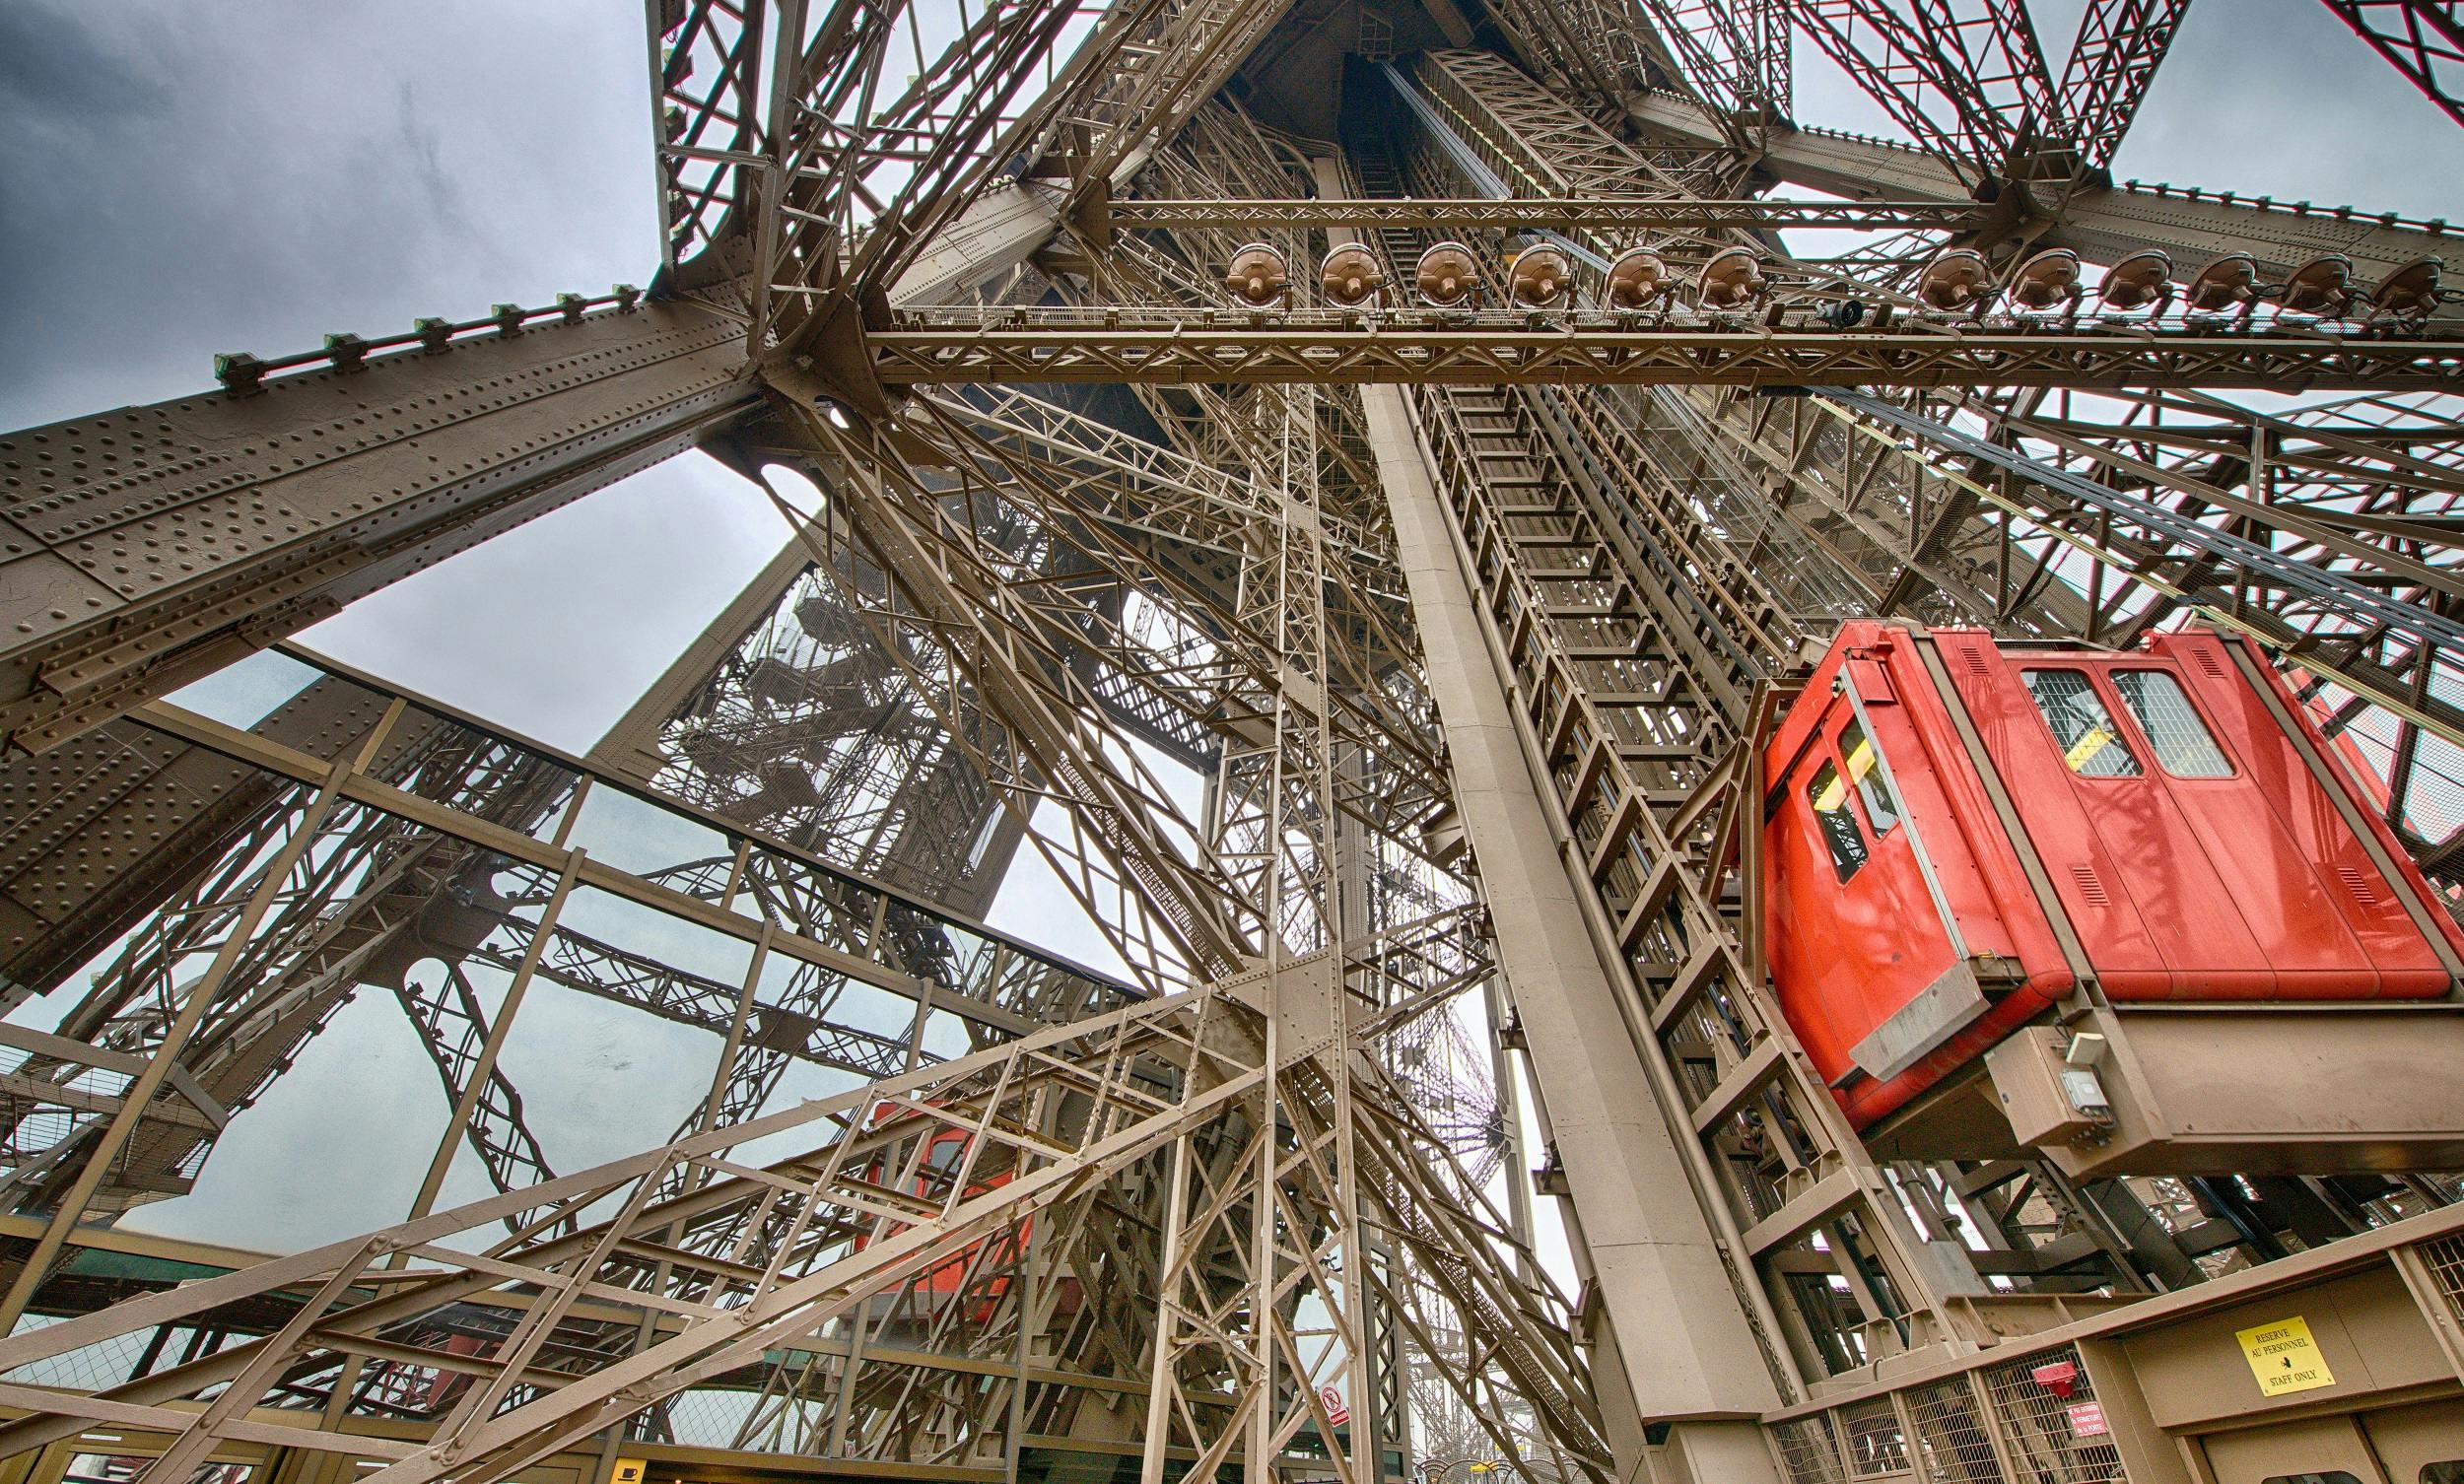 Rondleiding op de Eiffeltoren inclusief lift